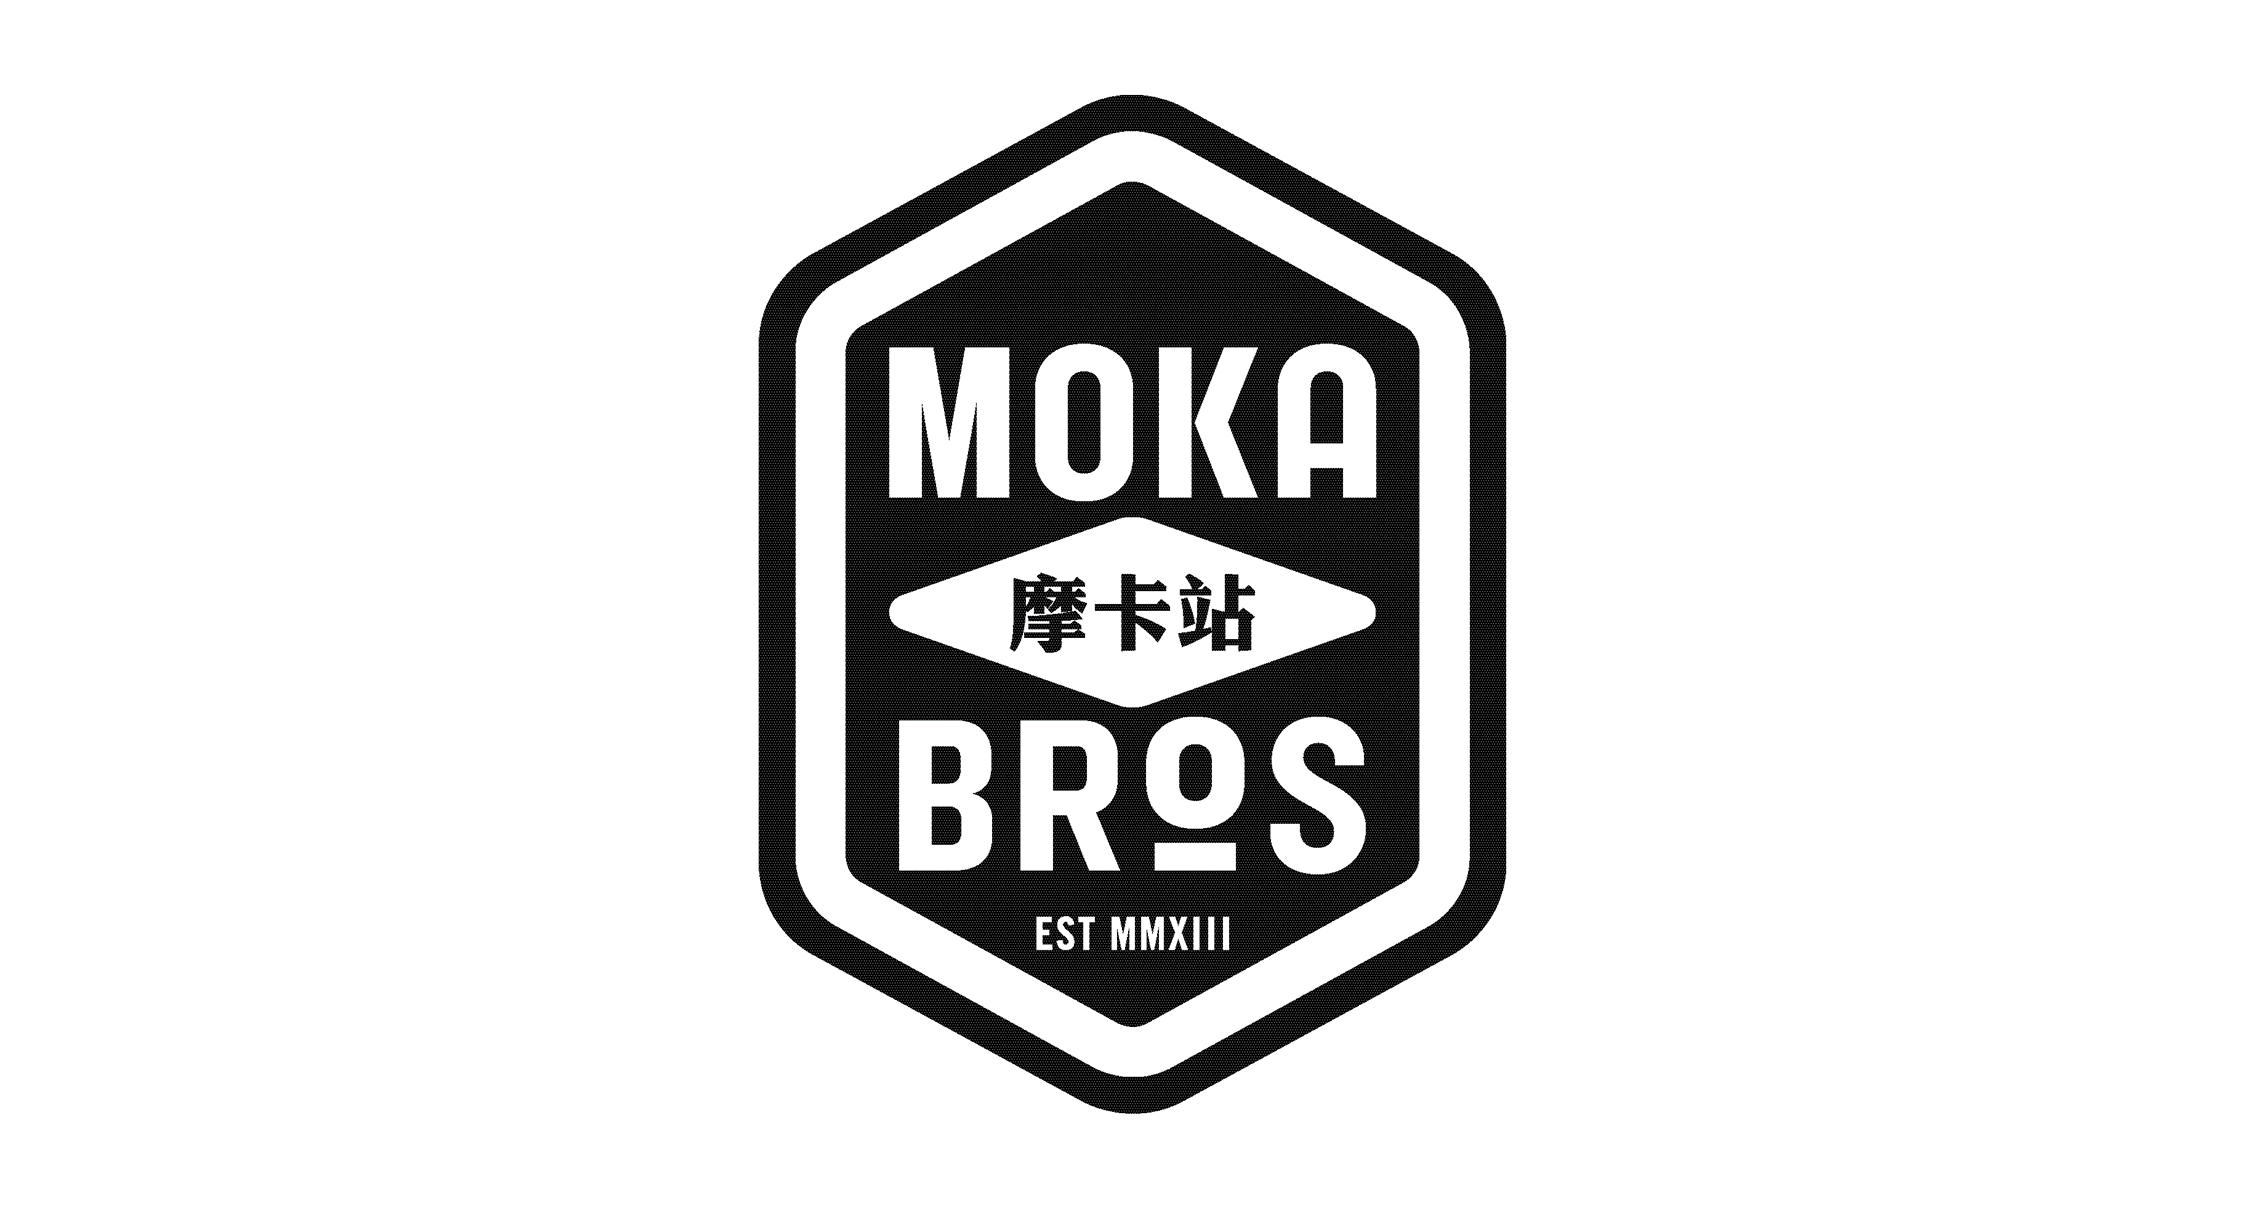 摩卡站 Moka Bros